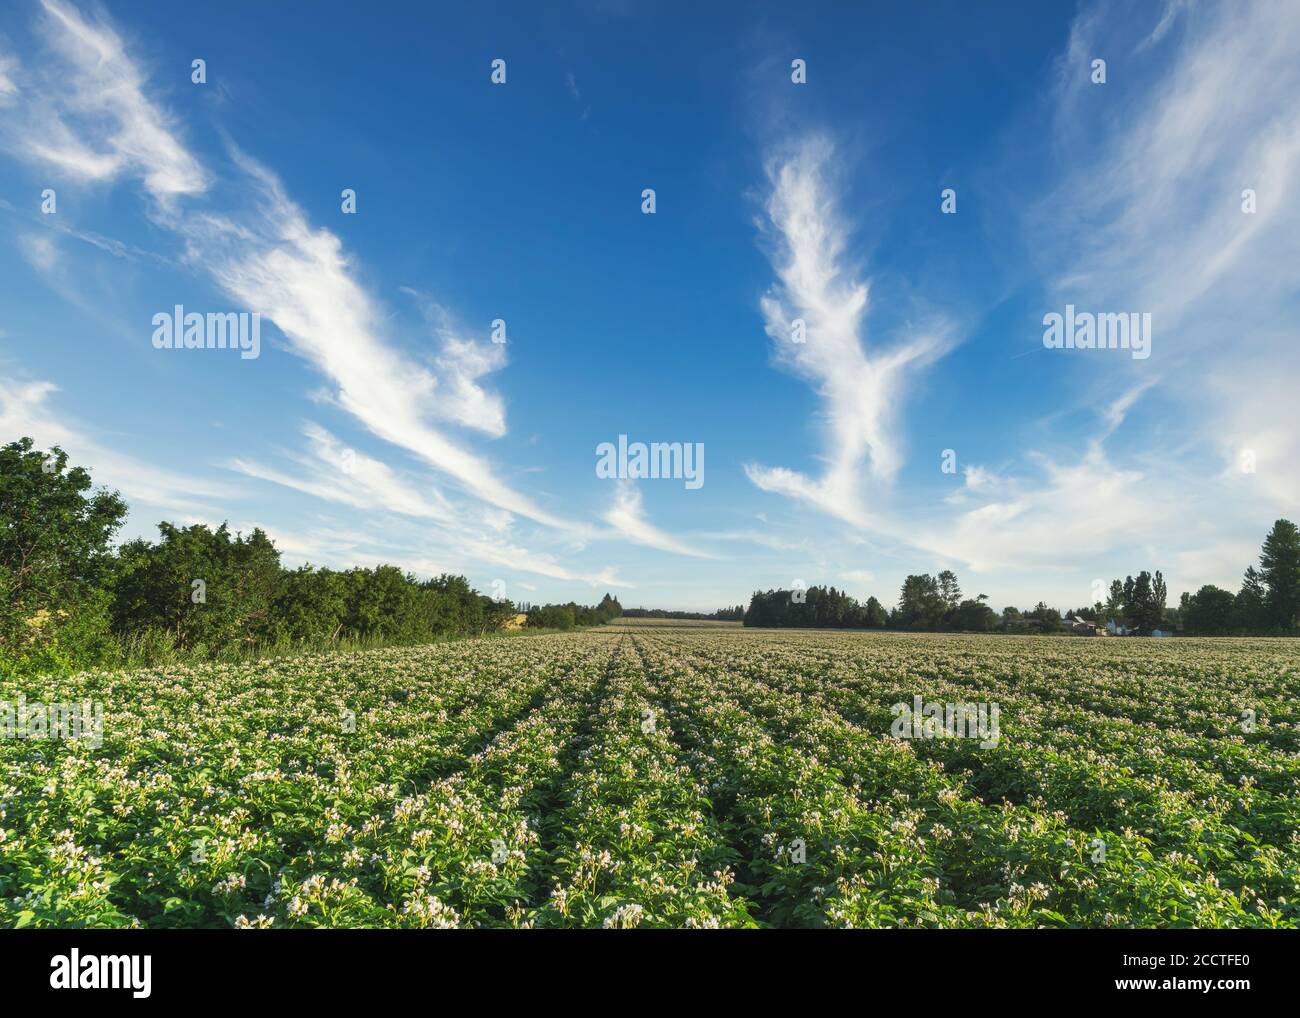 Un champ de pommes de terre à fleurs dans les régions rurales de l'Île-du-Prince-Édouard, au Canada. Banque D'Images